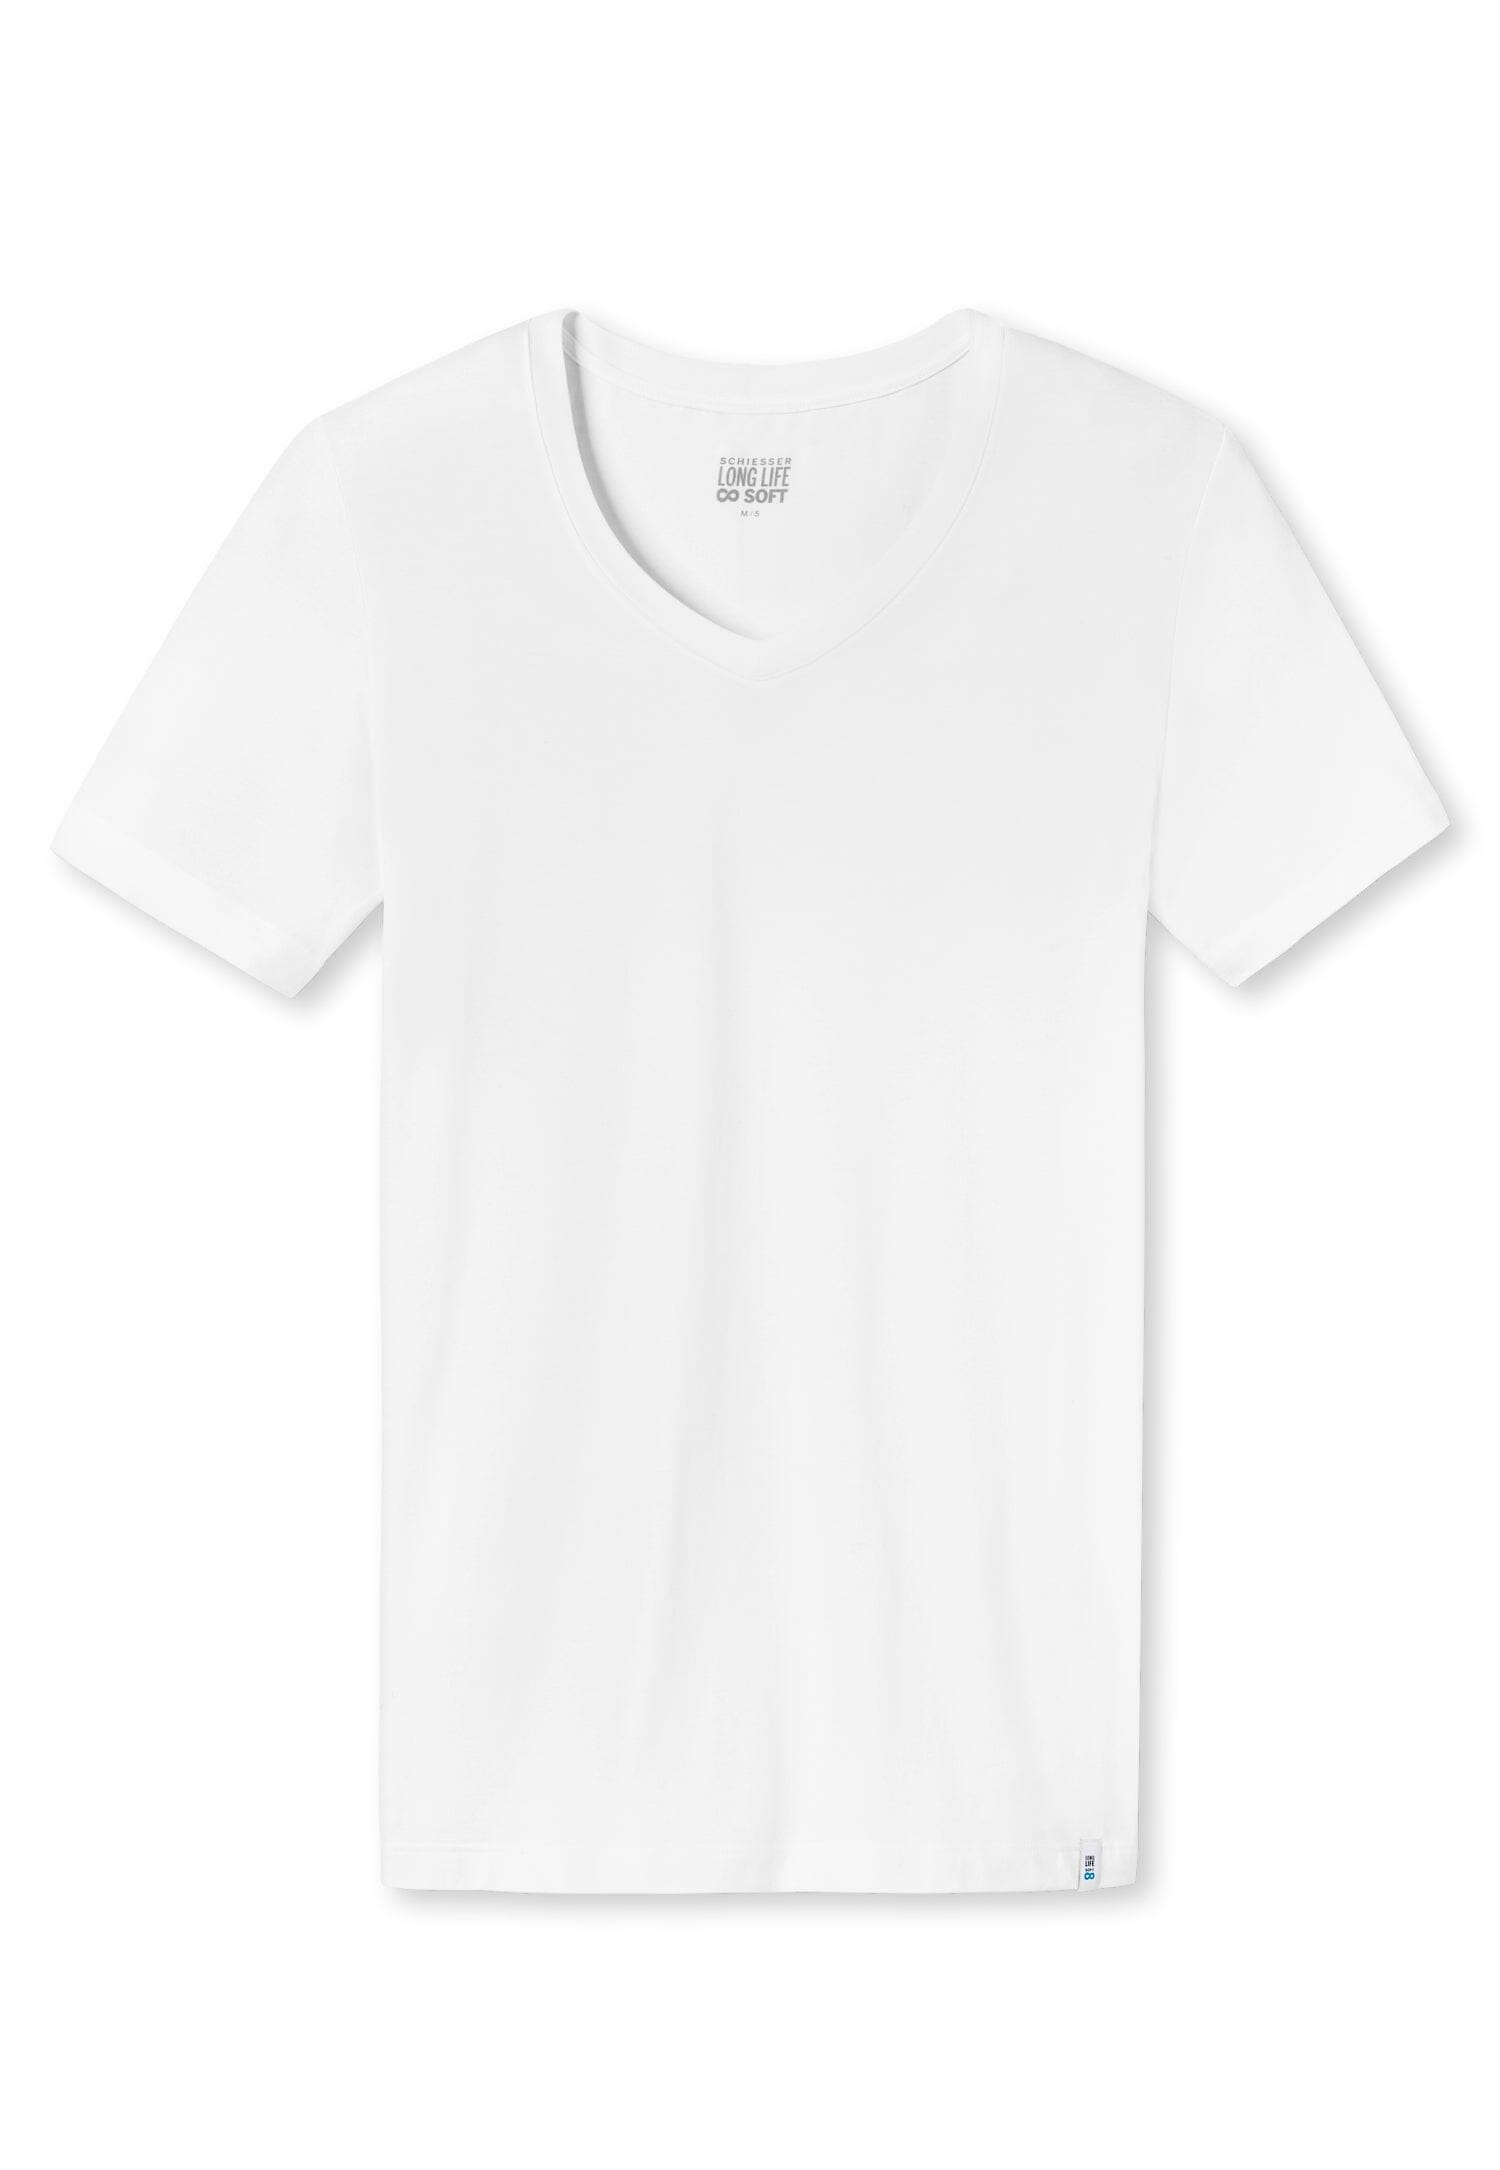 Schiesser - Long Life Soft T-Shirt - Wit Shirt Schiesser 